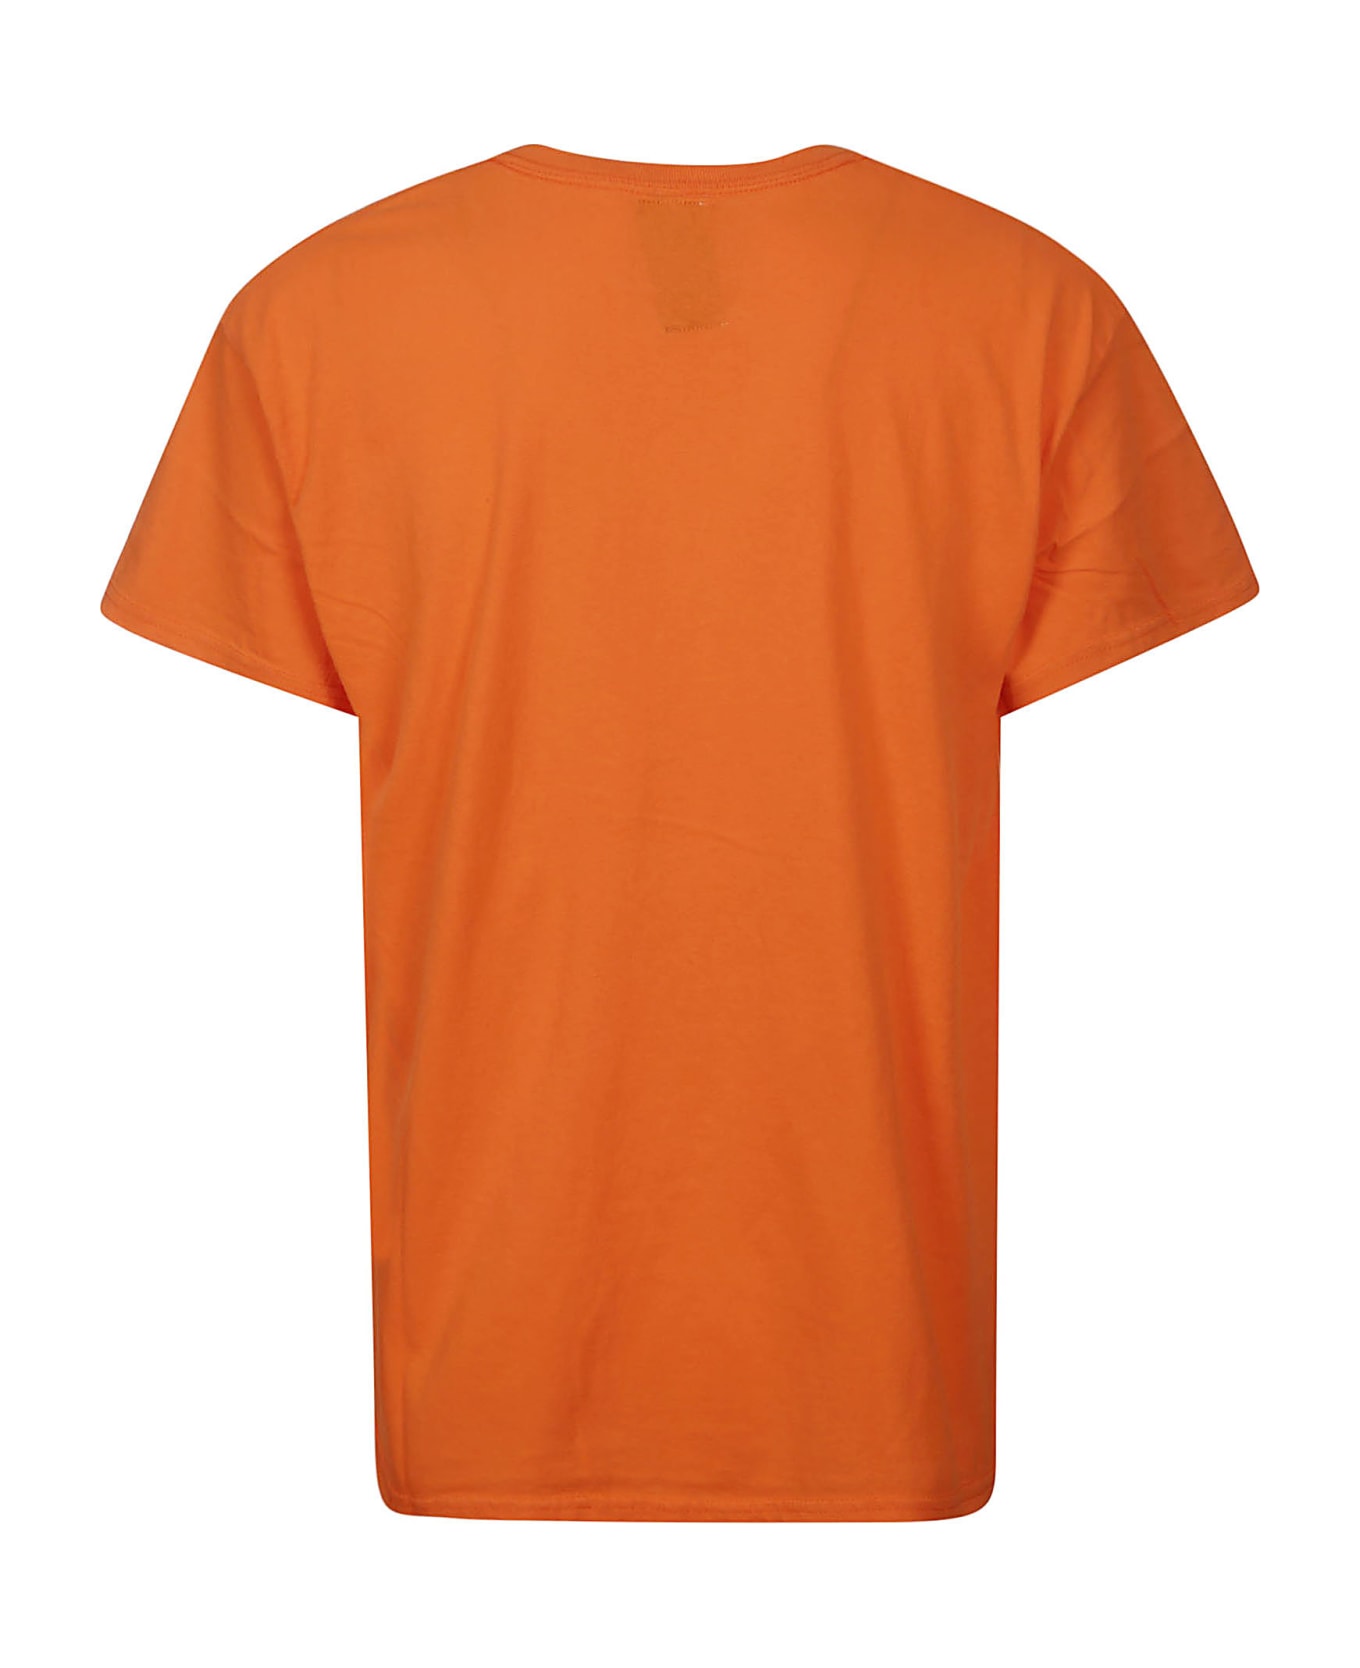 Wild Donkey T-shirt - Orange シャツ